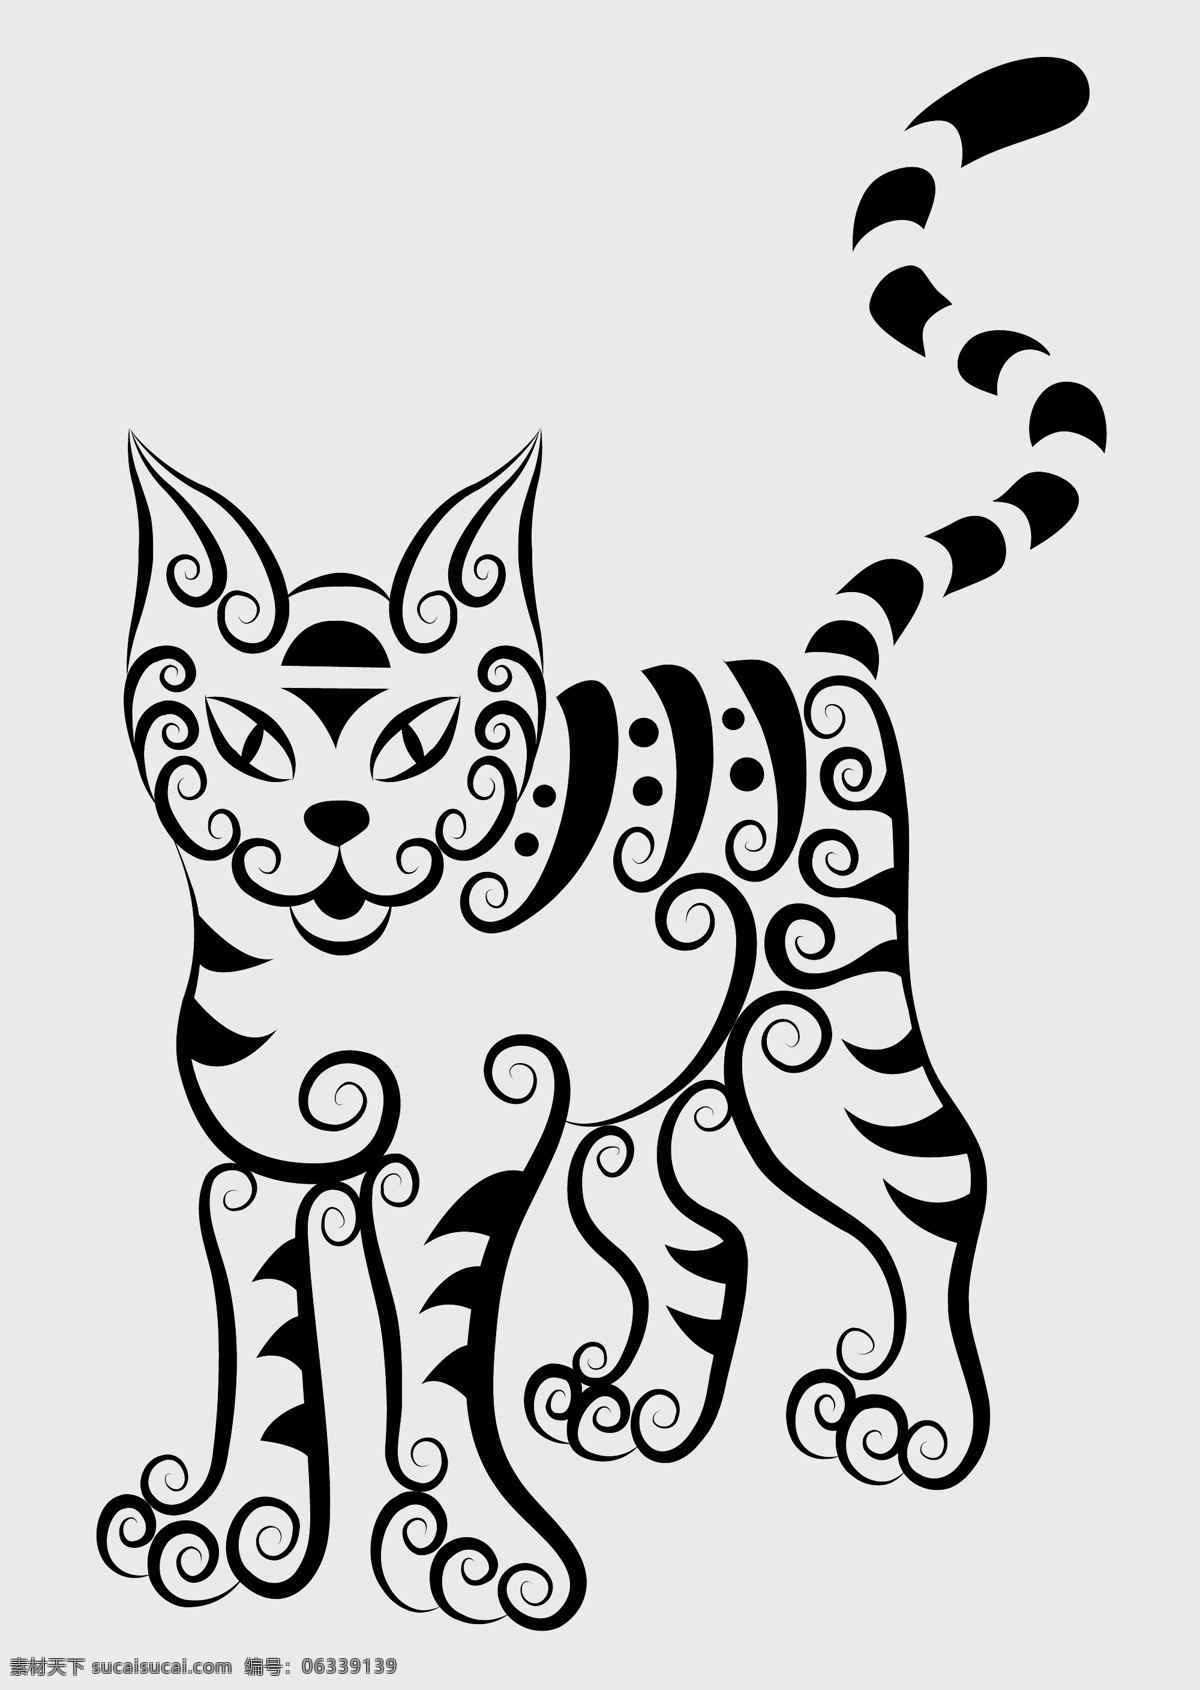 精美 花纹 猫 矢量 刺青 动物 剪影 矢量素材 手绘 图案 图形 纹身 线稿 线条 矢量图 其他矢量图